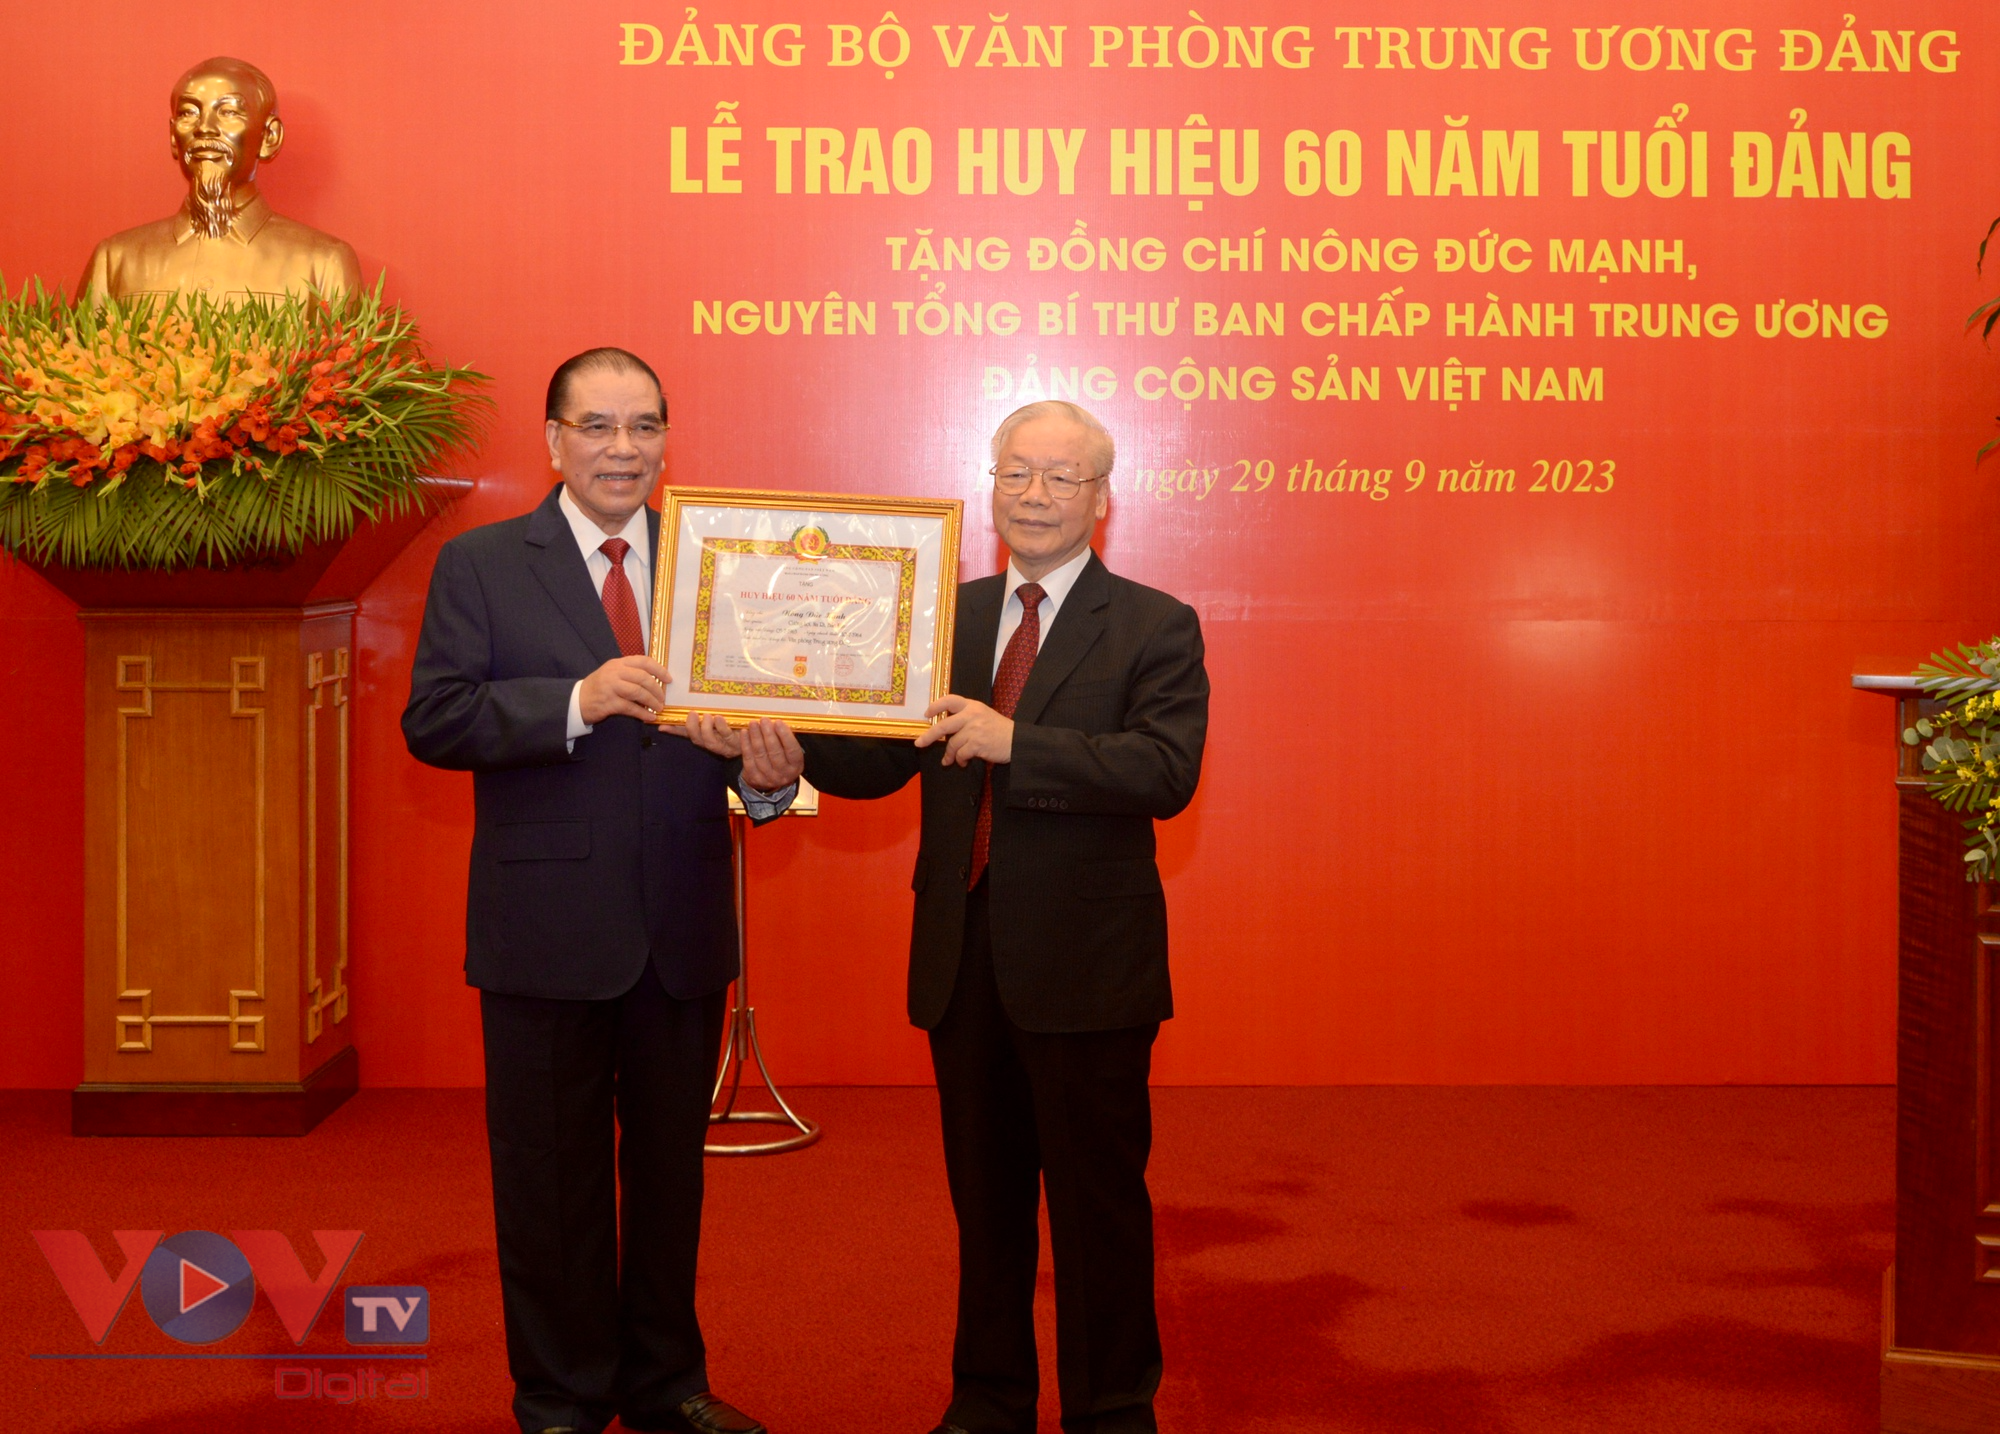 Tổng Bí thư Nguyễn Phú Trọng trao huy hiệu 60 năm tuổi Đảng tặng Nguyên Tổng Bí thư Nông Đức Mạnh - Ảnh 8.